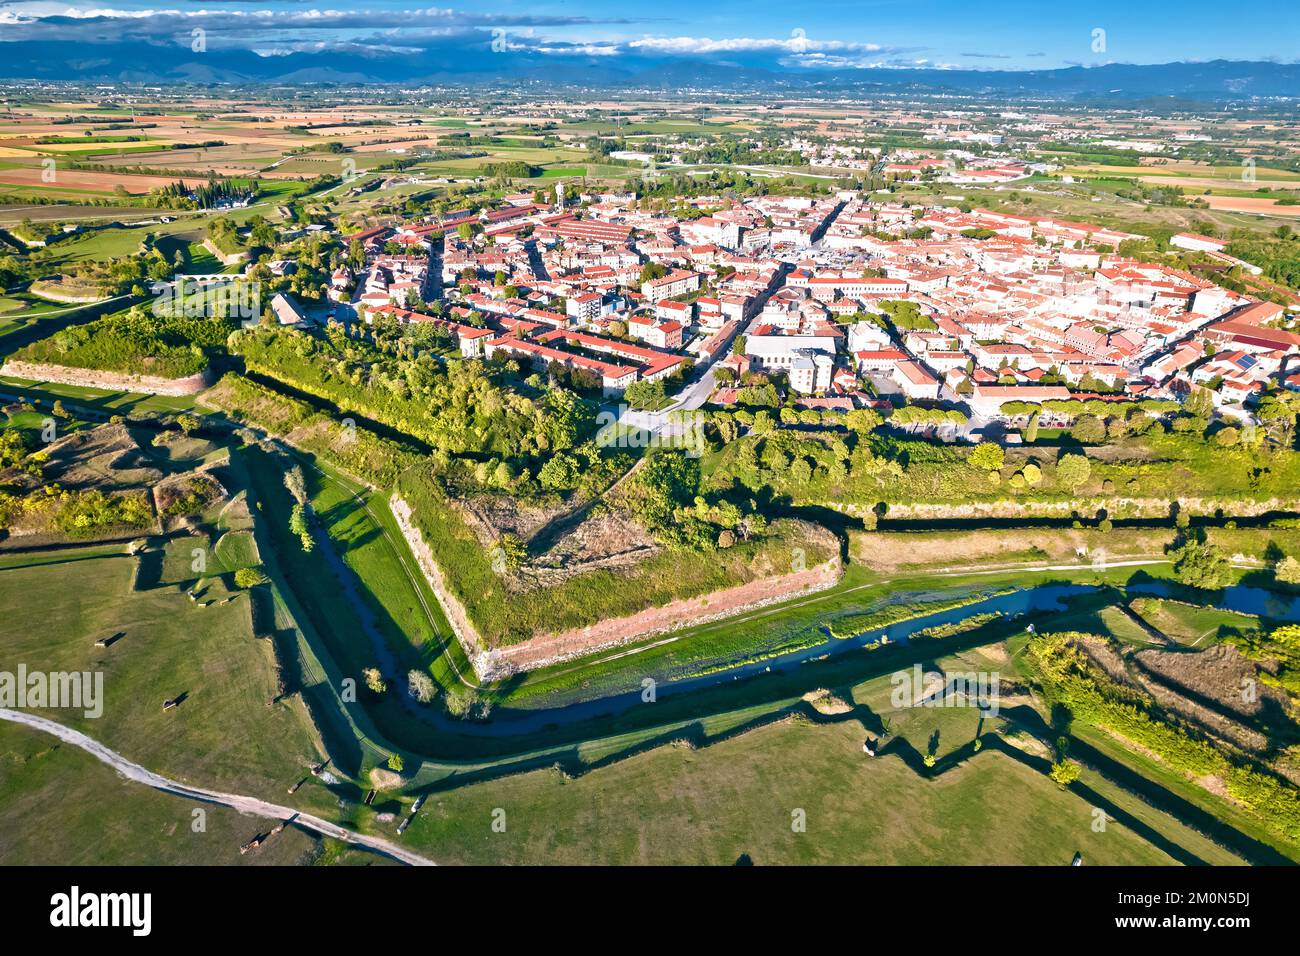 Città di Palmanova mura di difesa e trincee vista panoramica aerea, patrimonio dell'umanità dell'UNESCO in Friuli Venezia Giulia regione d'Italia Foto Stock